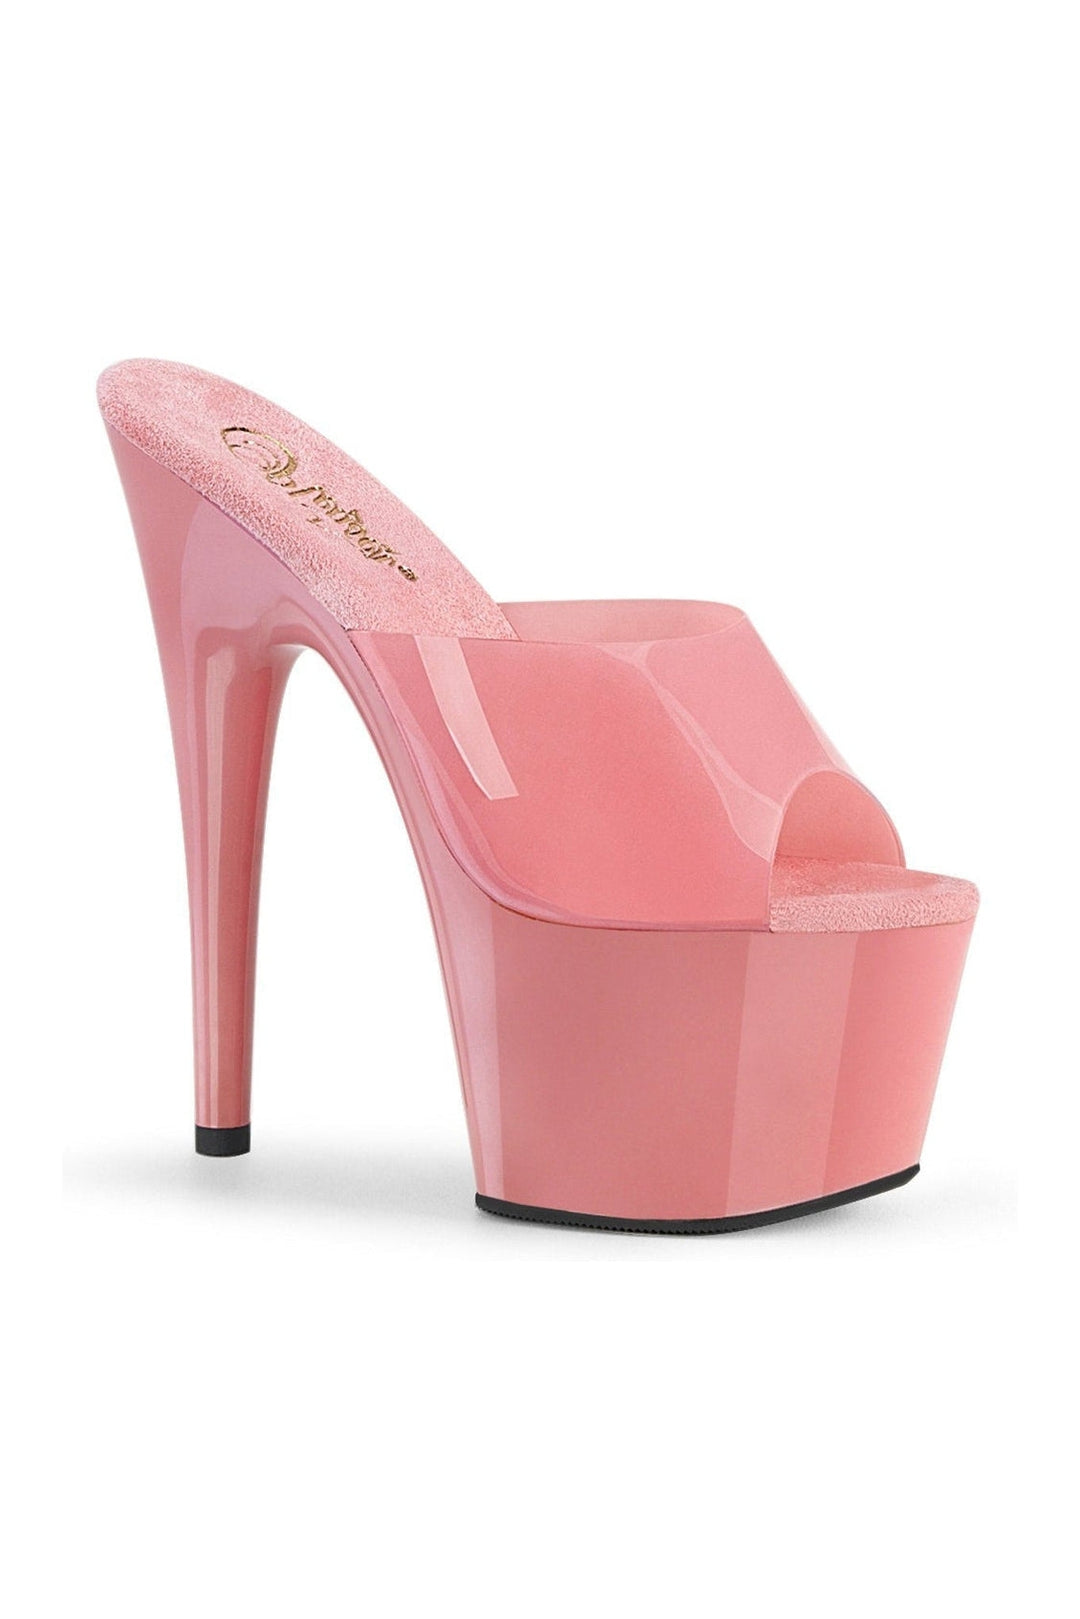 Pleaser Pink Slides Platform Stripper Shoes | Buy at Sexyshoes.com